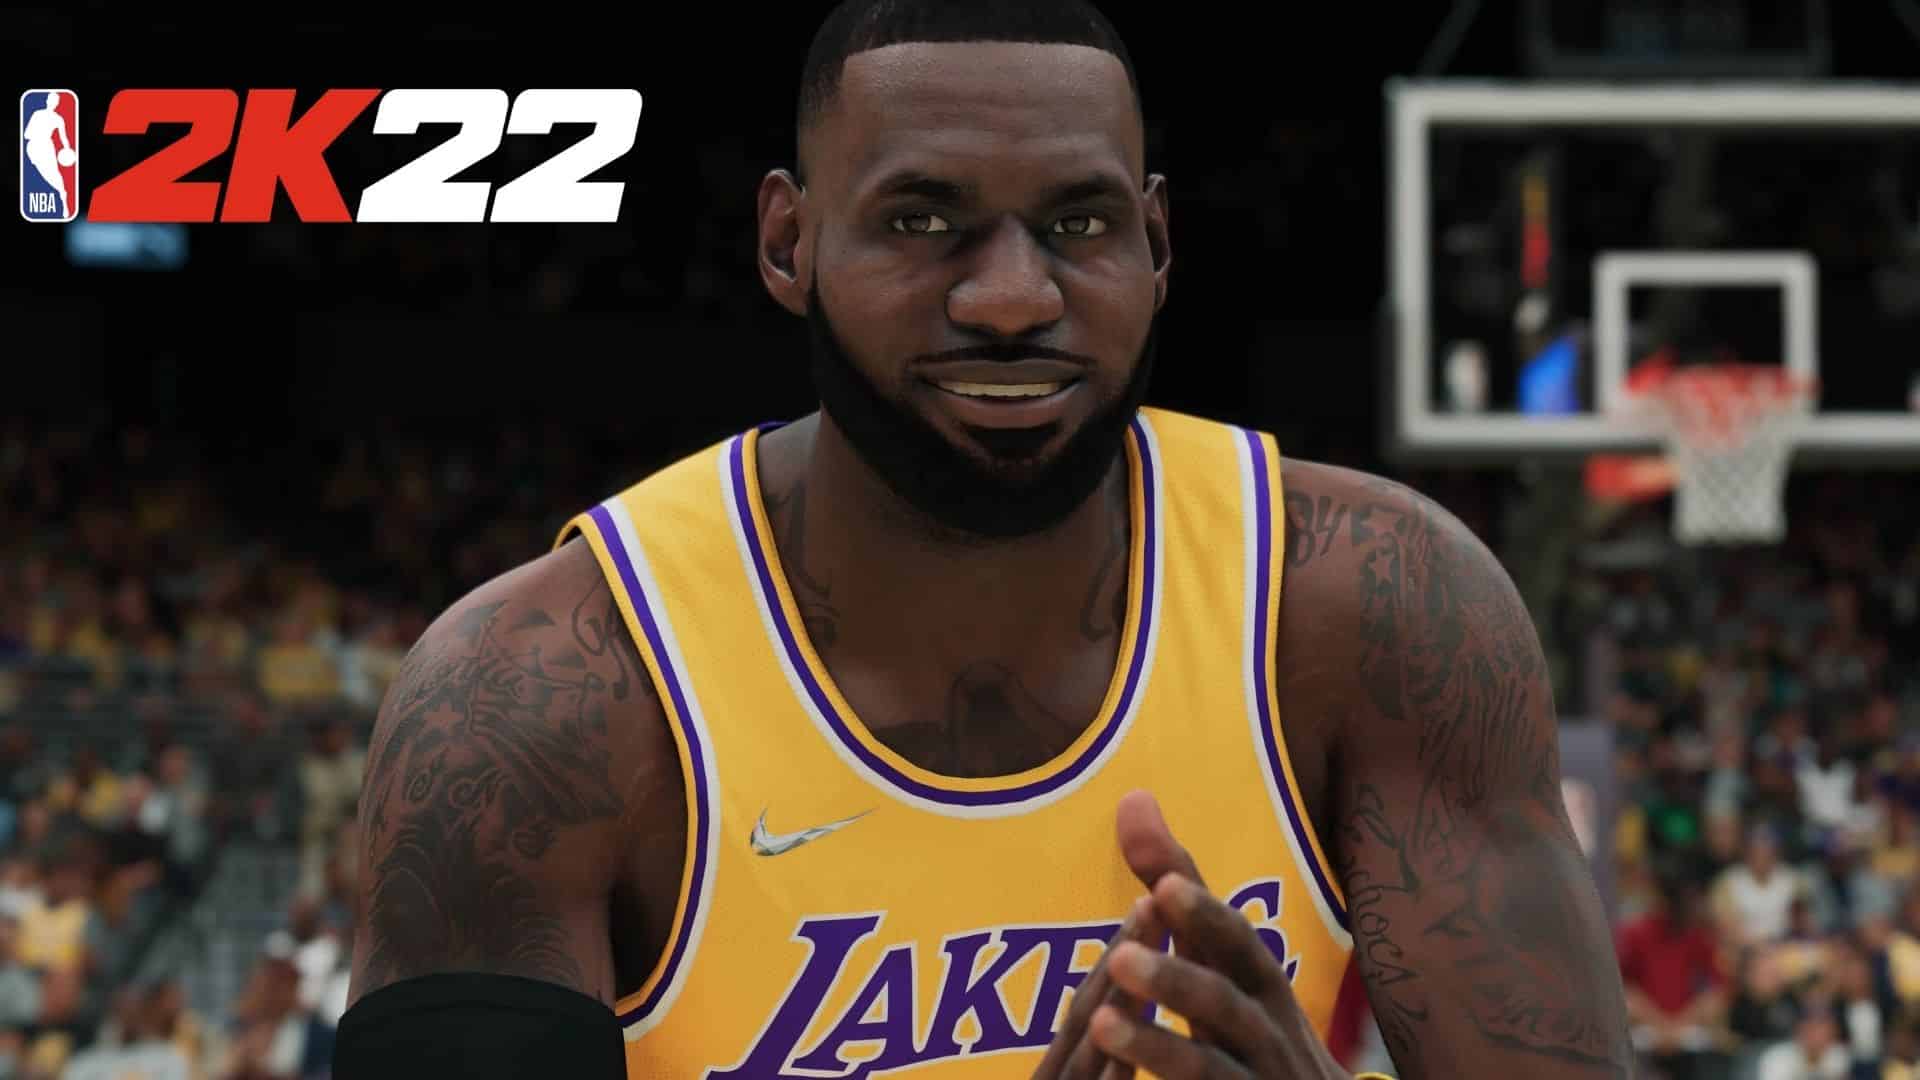 LeBron James got a super-weird facelift in NBA2k22